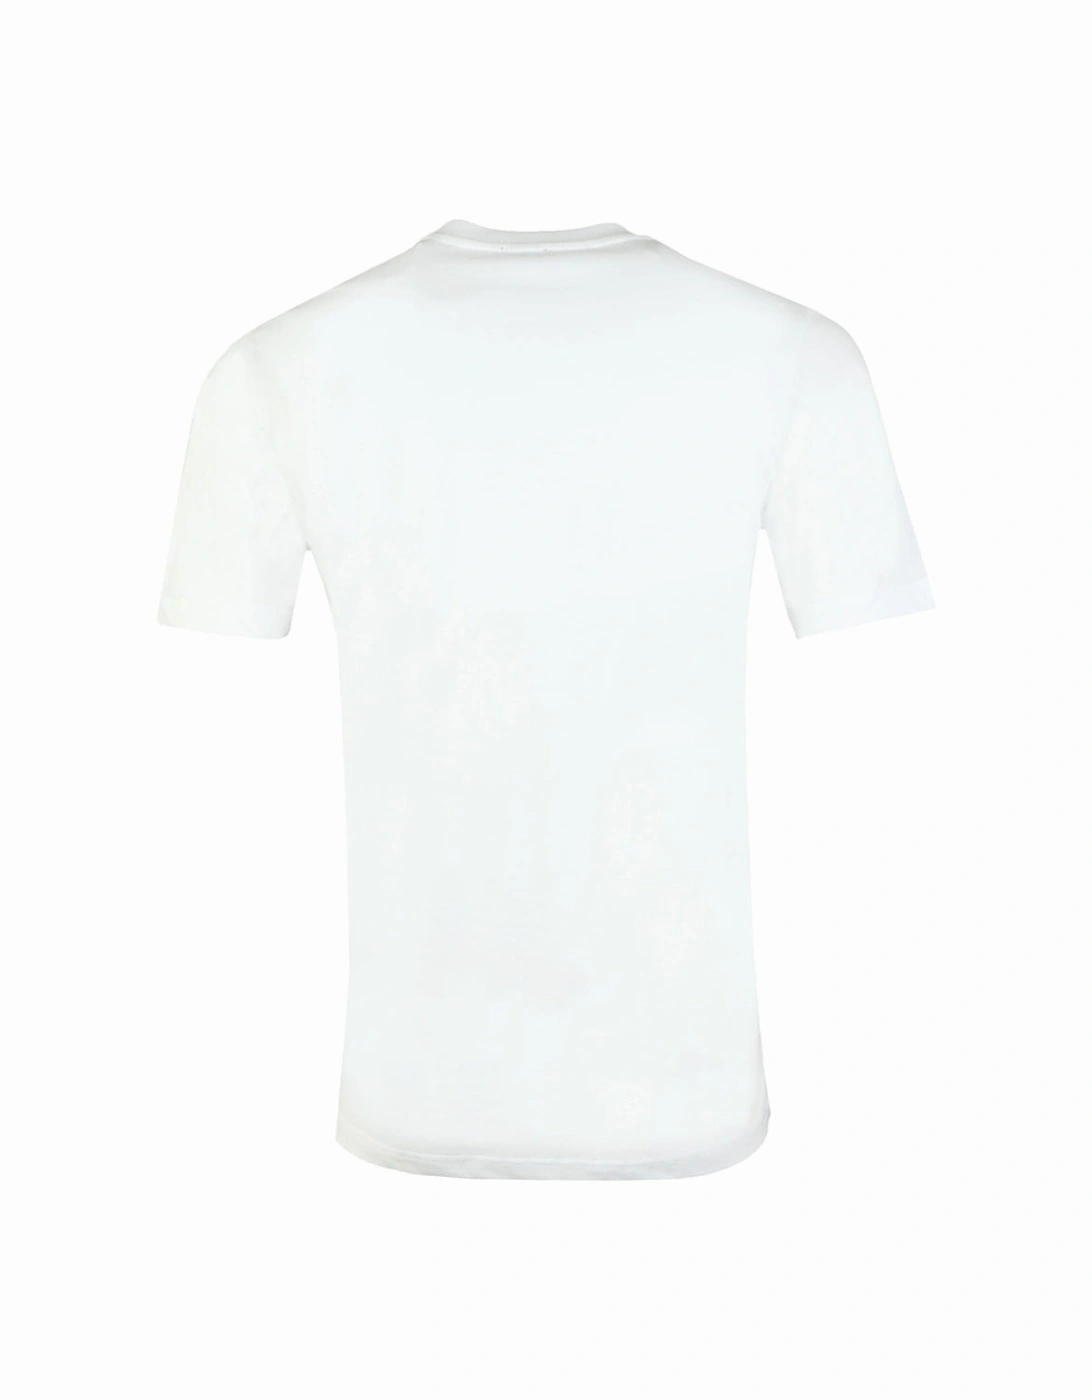 001978 White T-Shirt